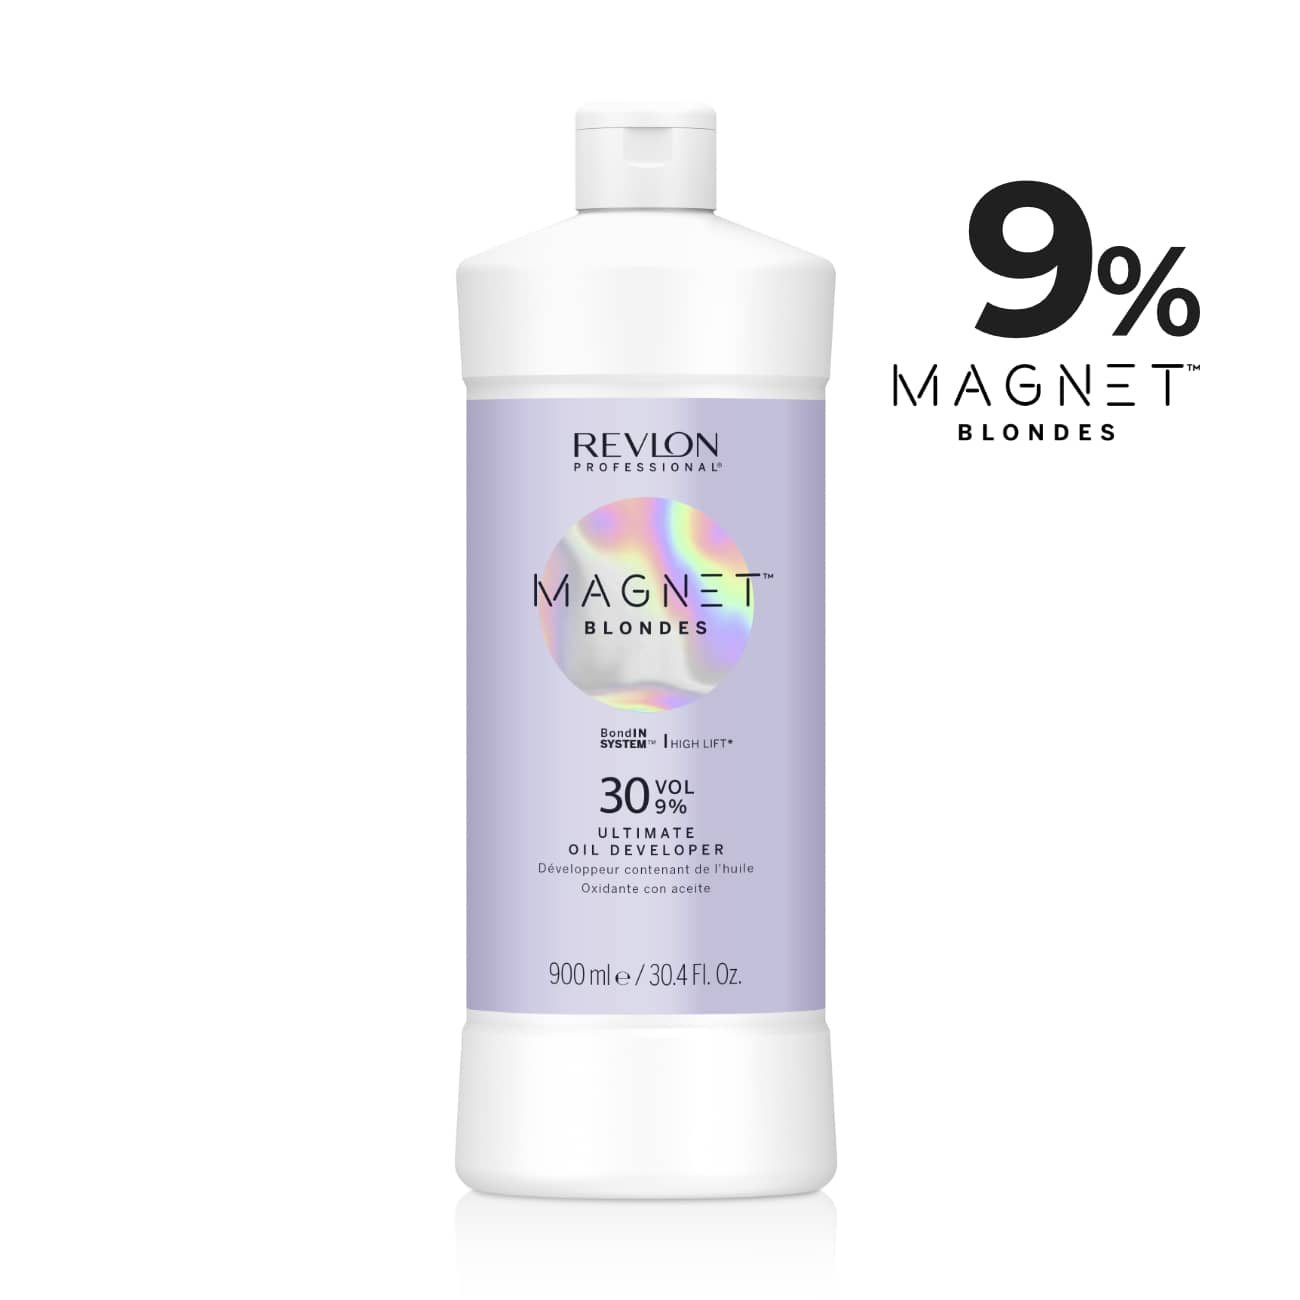 Magnet Blondes Oil Developer 30 Volume 9% - Sagema